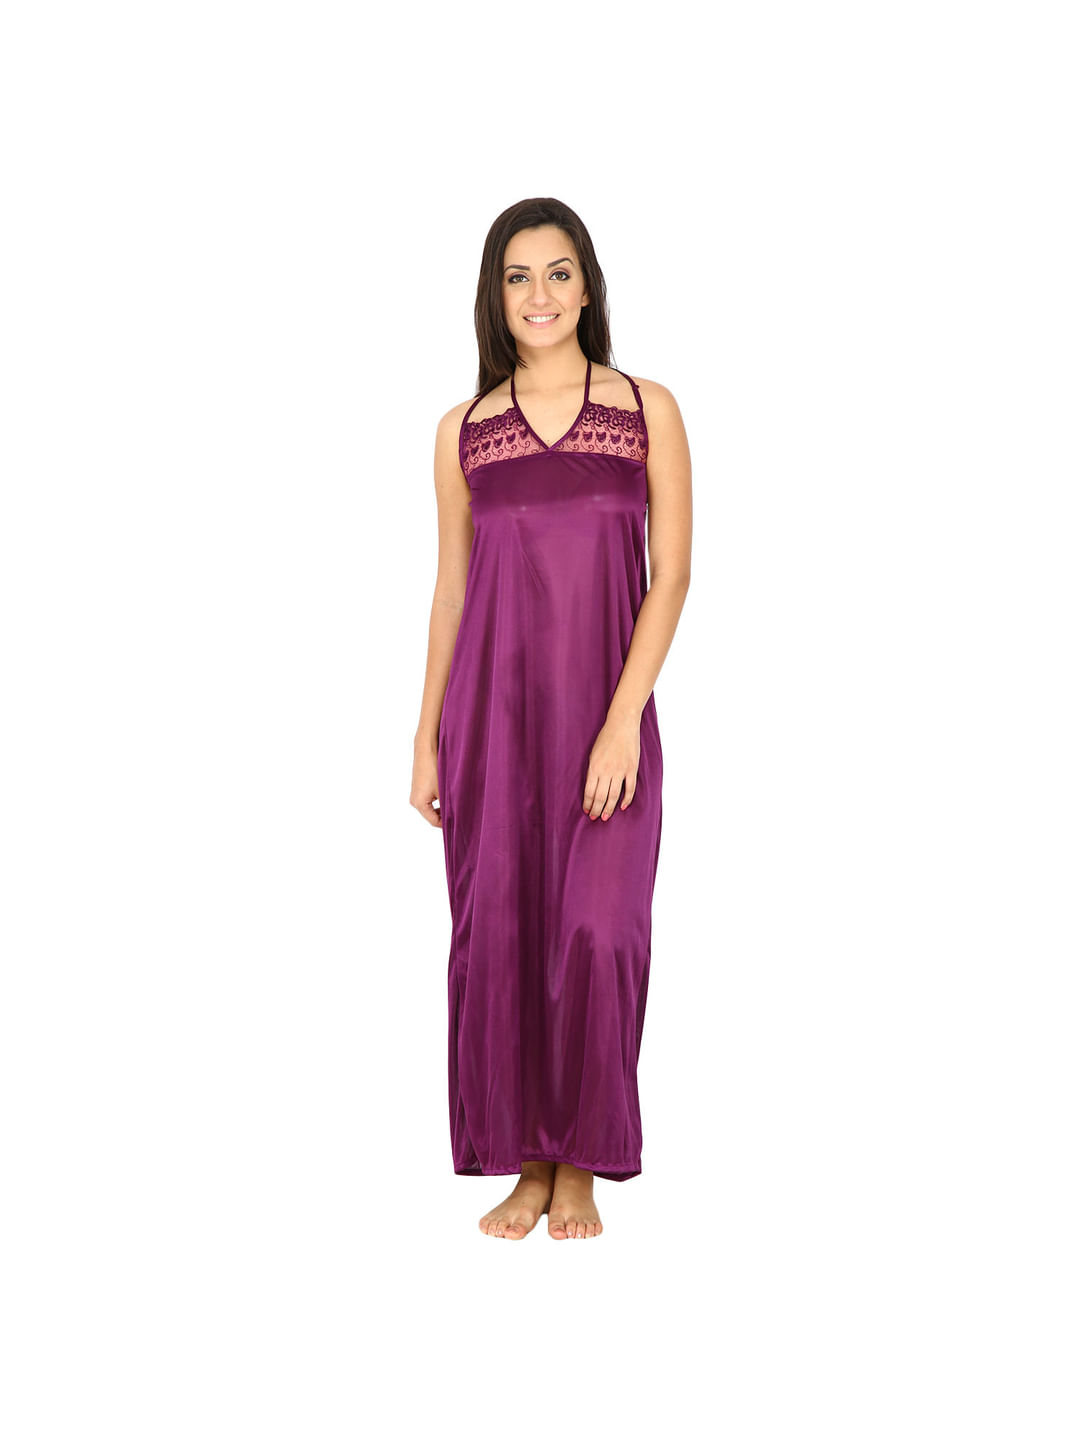 Satin Purple Nighty, Nightdress Set Of 6 (Free Size)